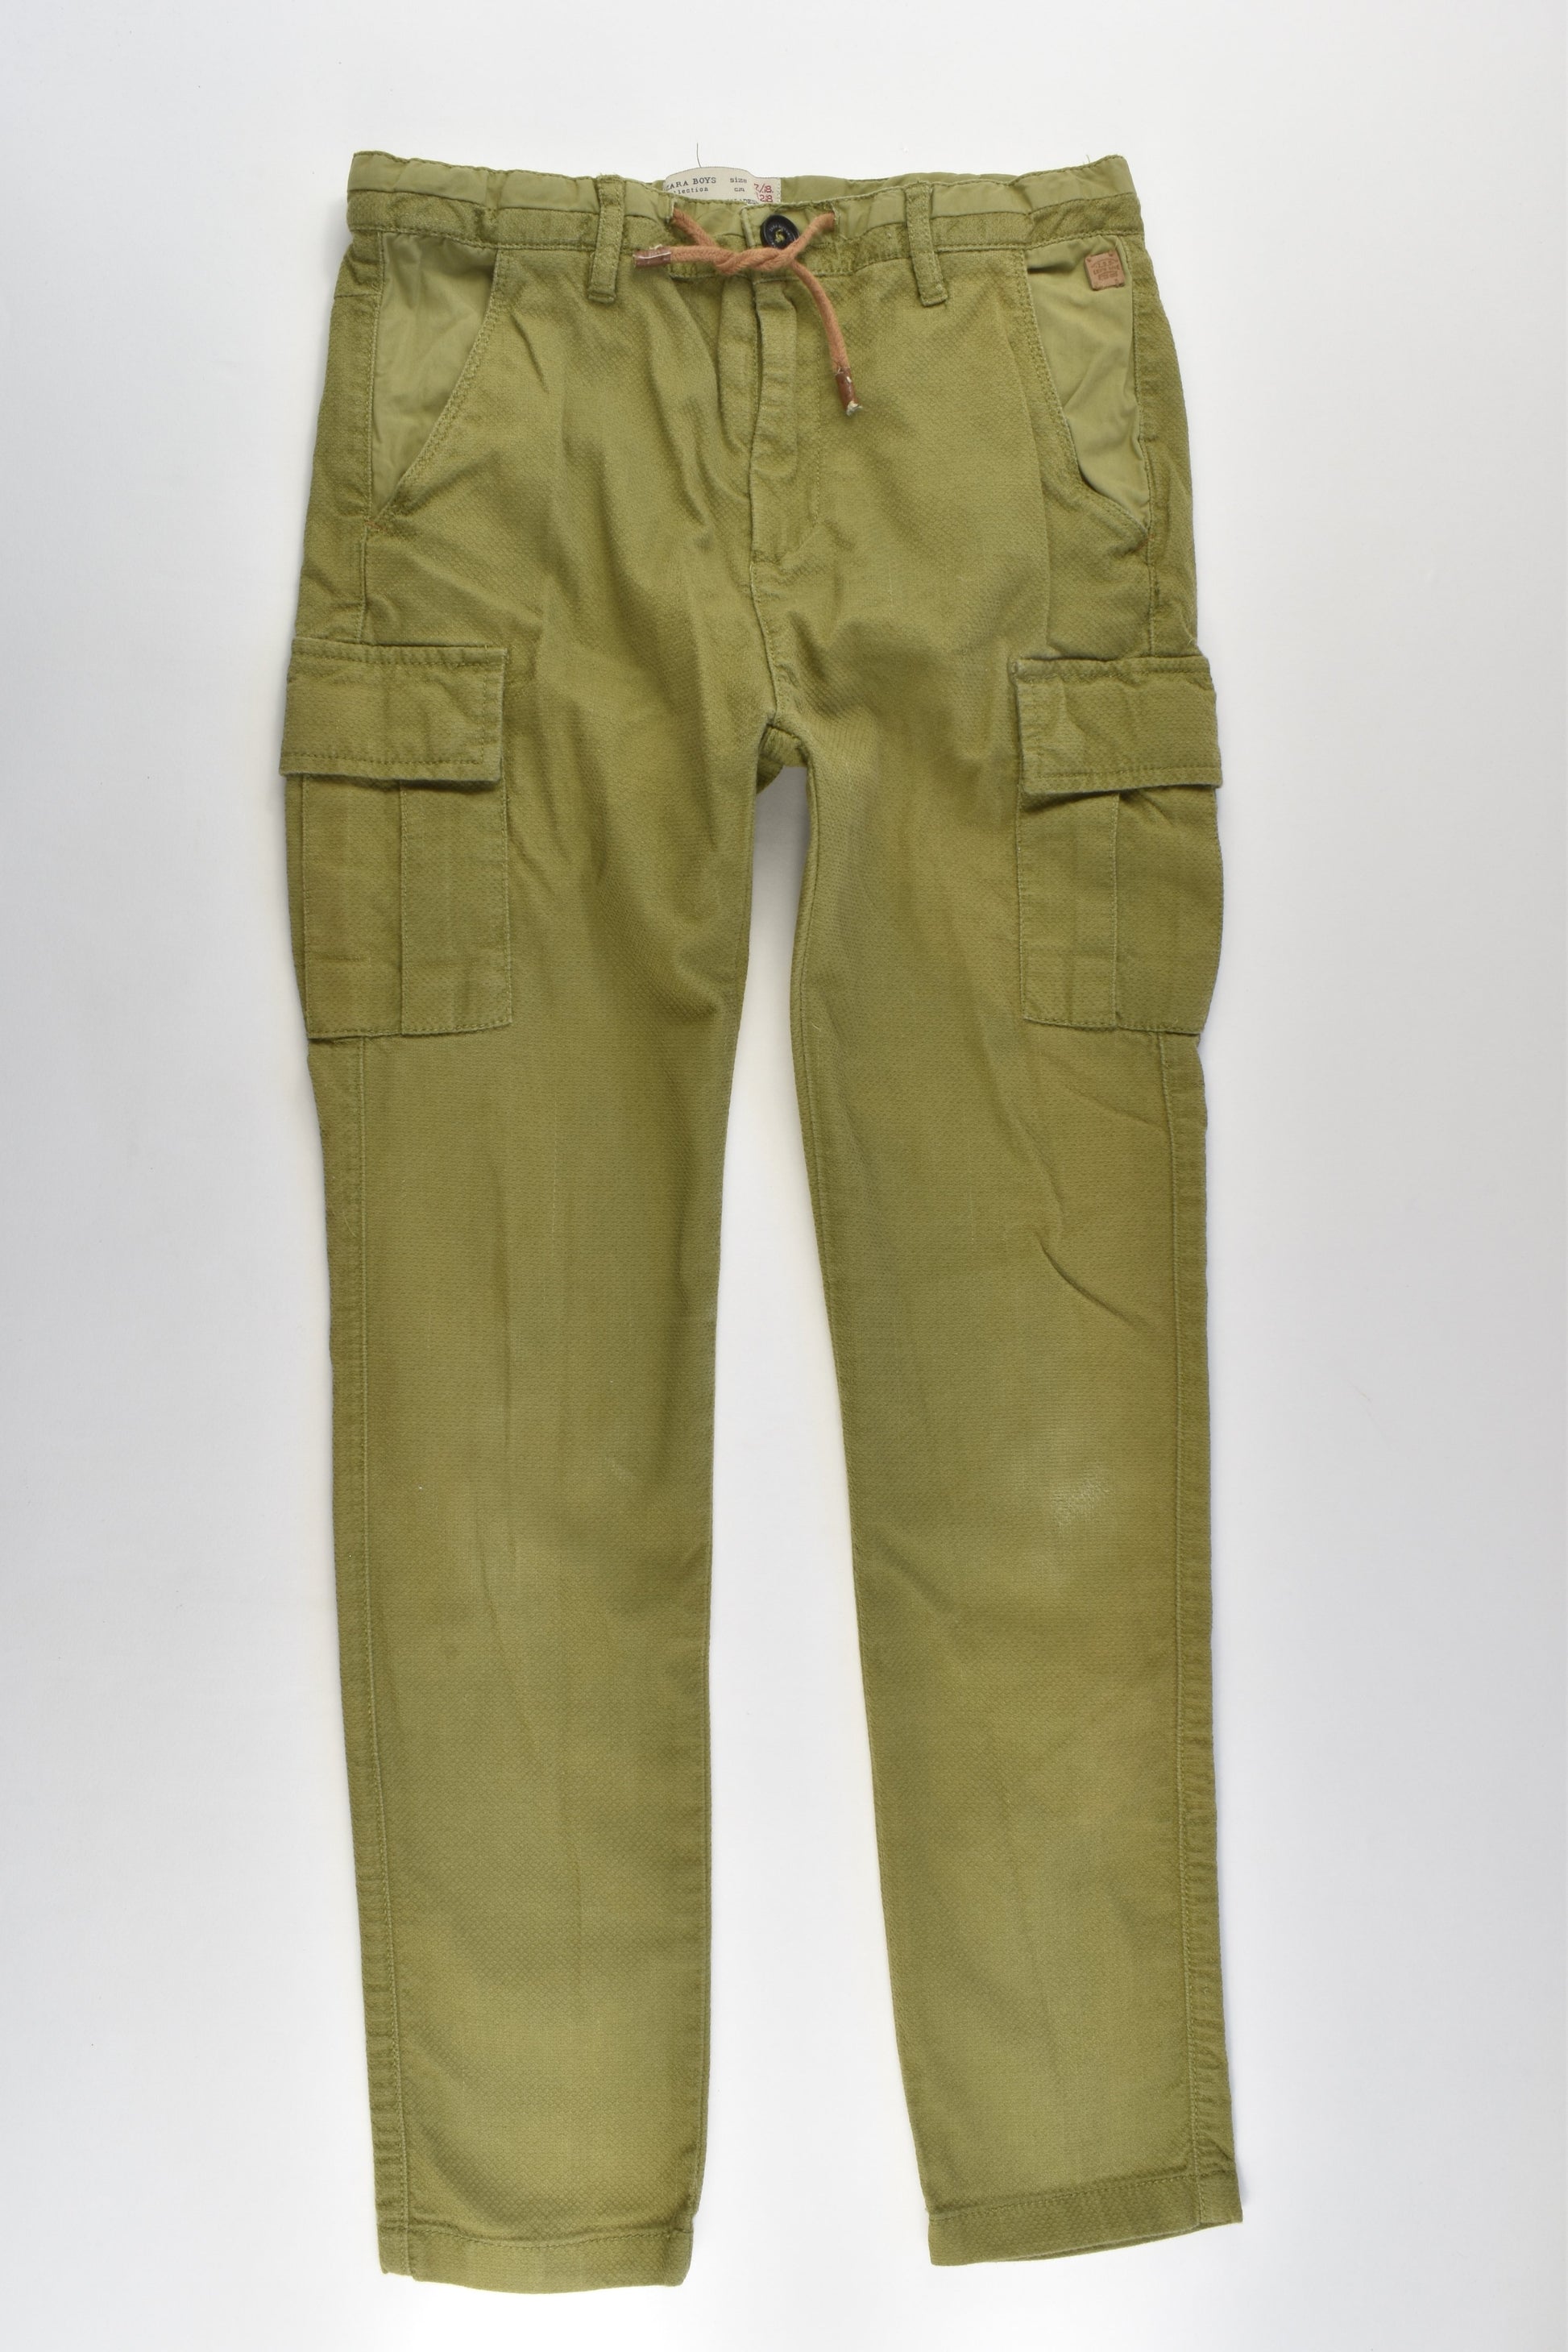 Zara Size 7/8 (128 cm) Pants